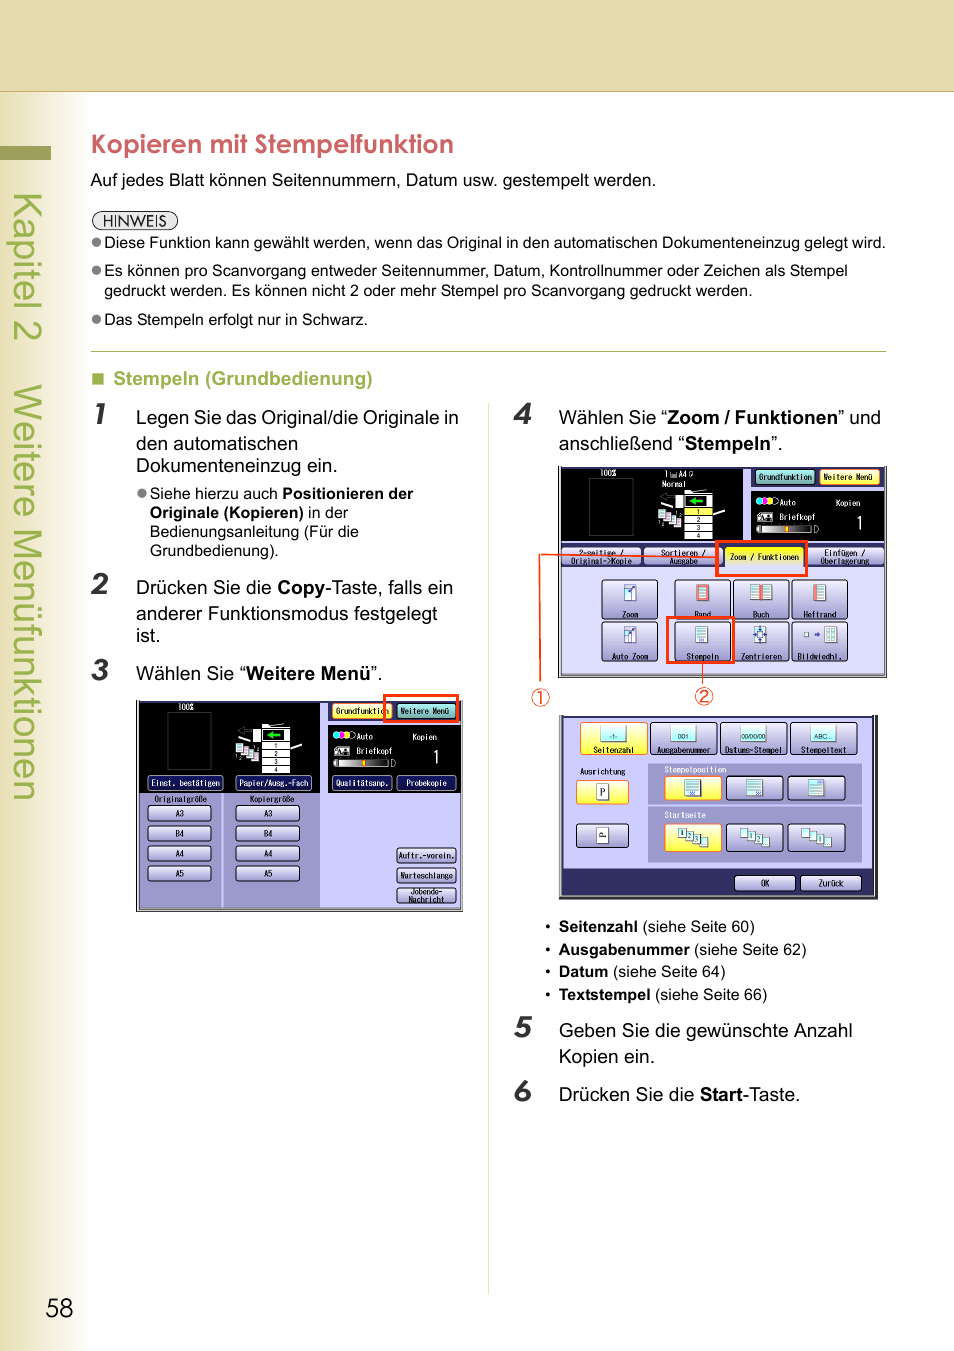 Kopieren mit stempelfunktion, Kapitel 2 weitere menüfunktionen | Panasonic DPC322 Benutzerhandbuch | Seite 58 / 100